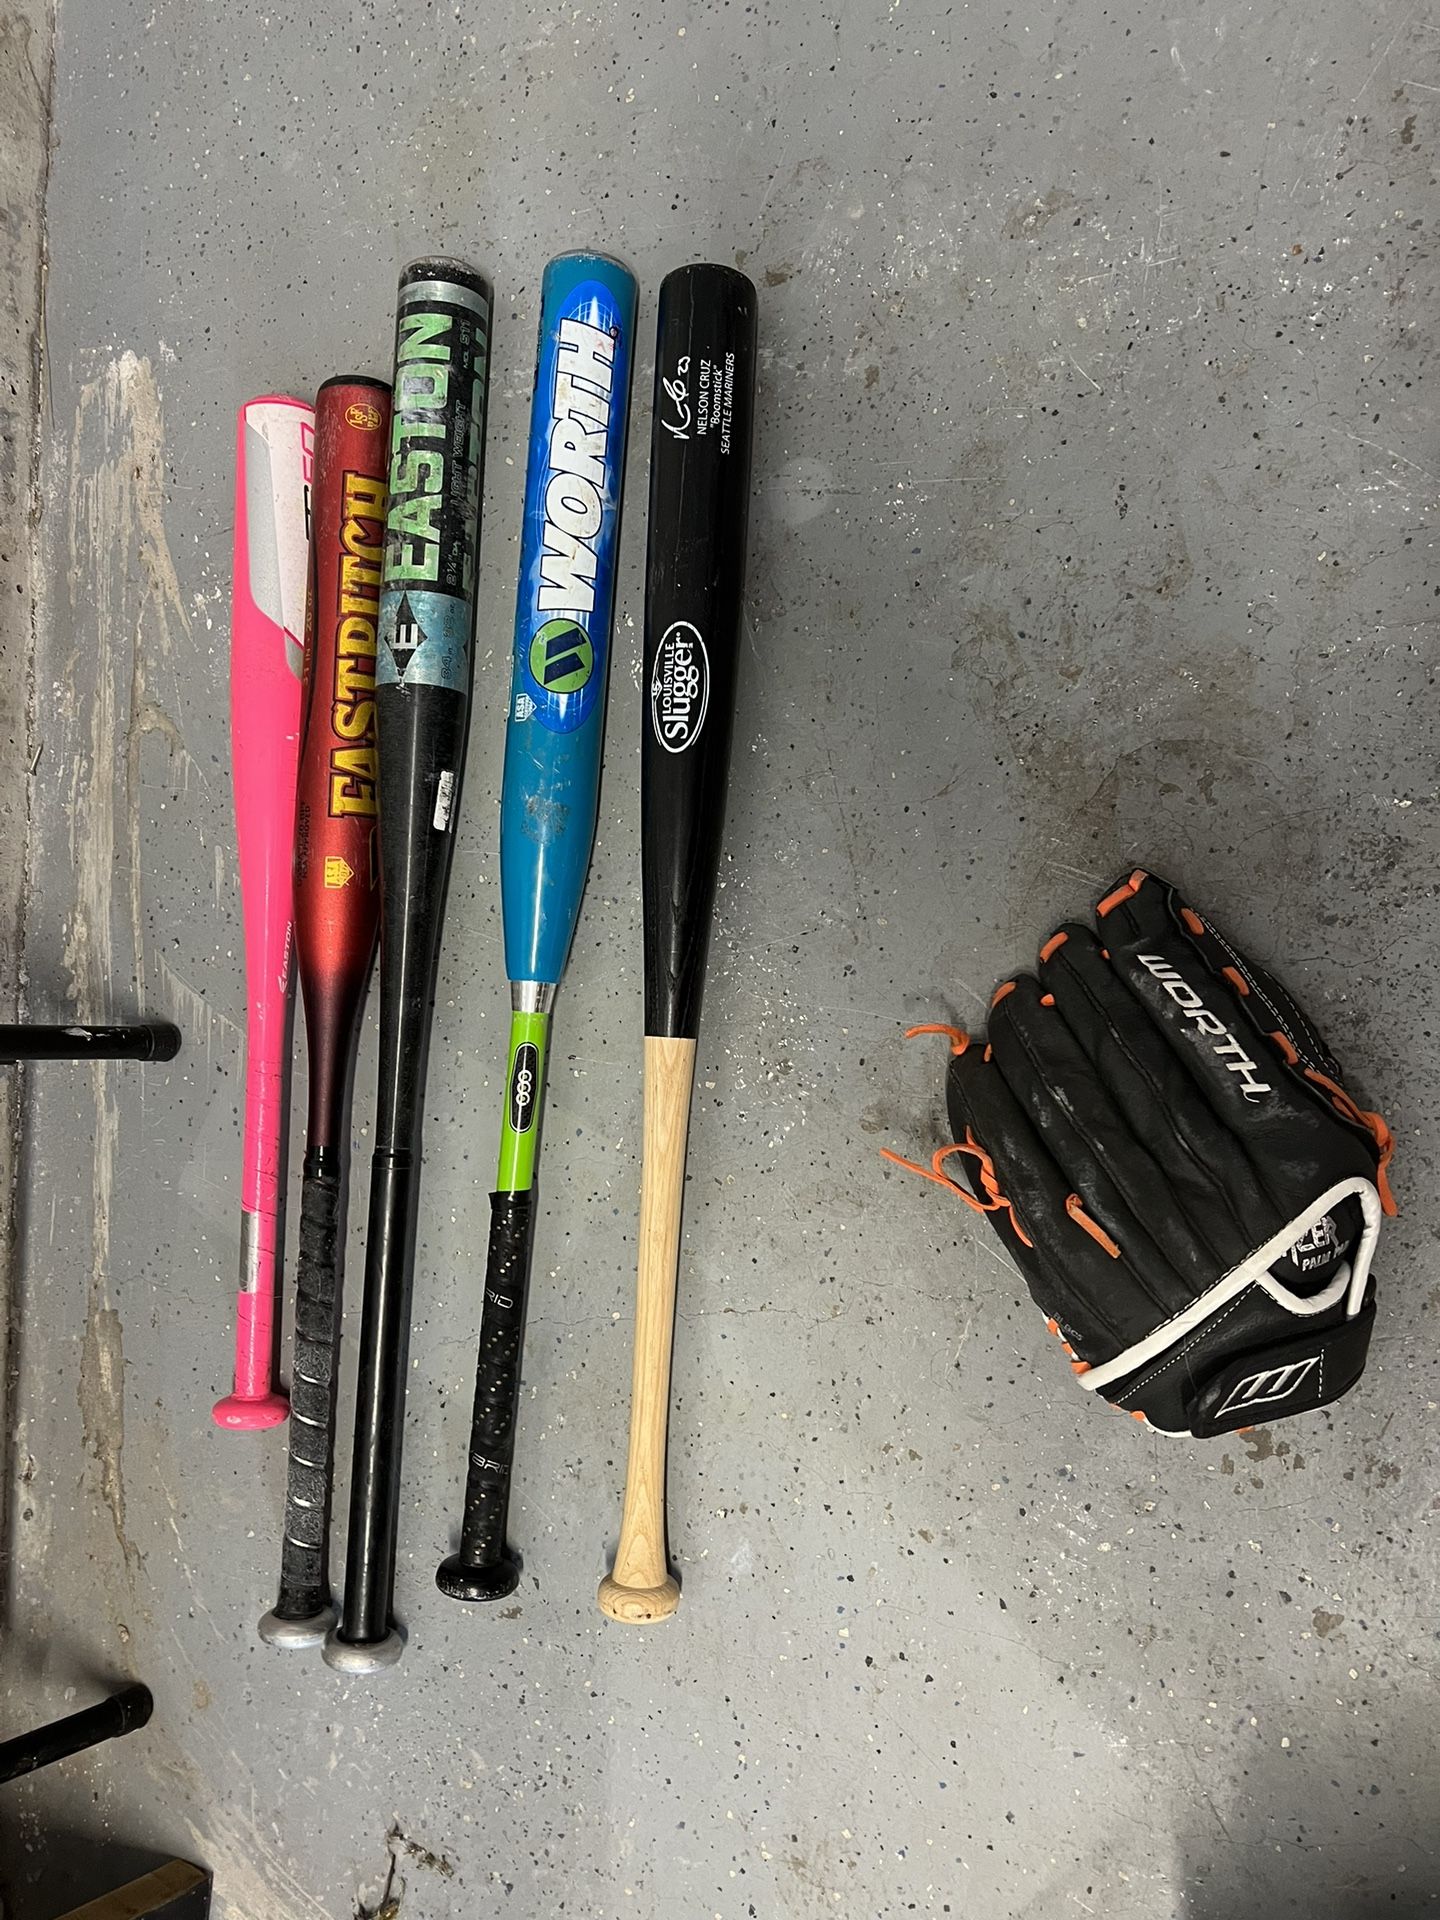 Baseball Bats And Glove